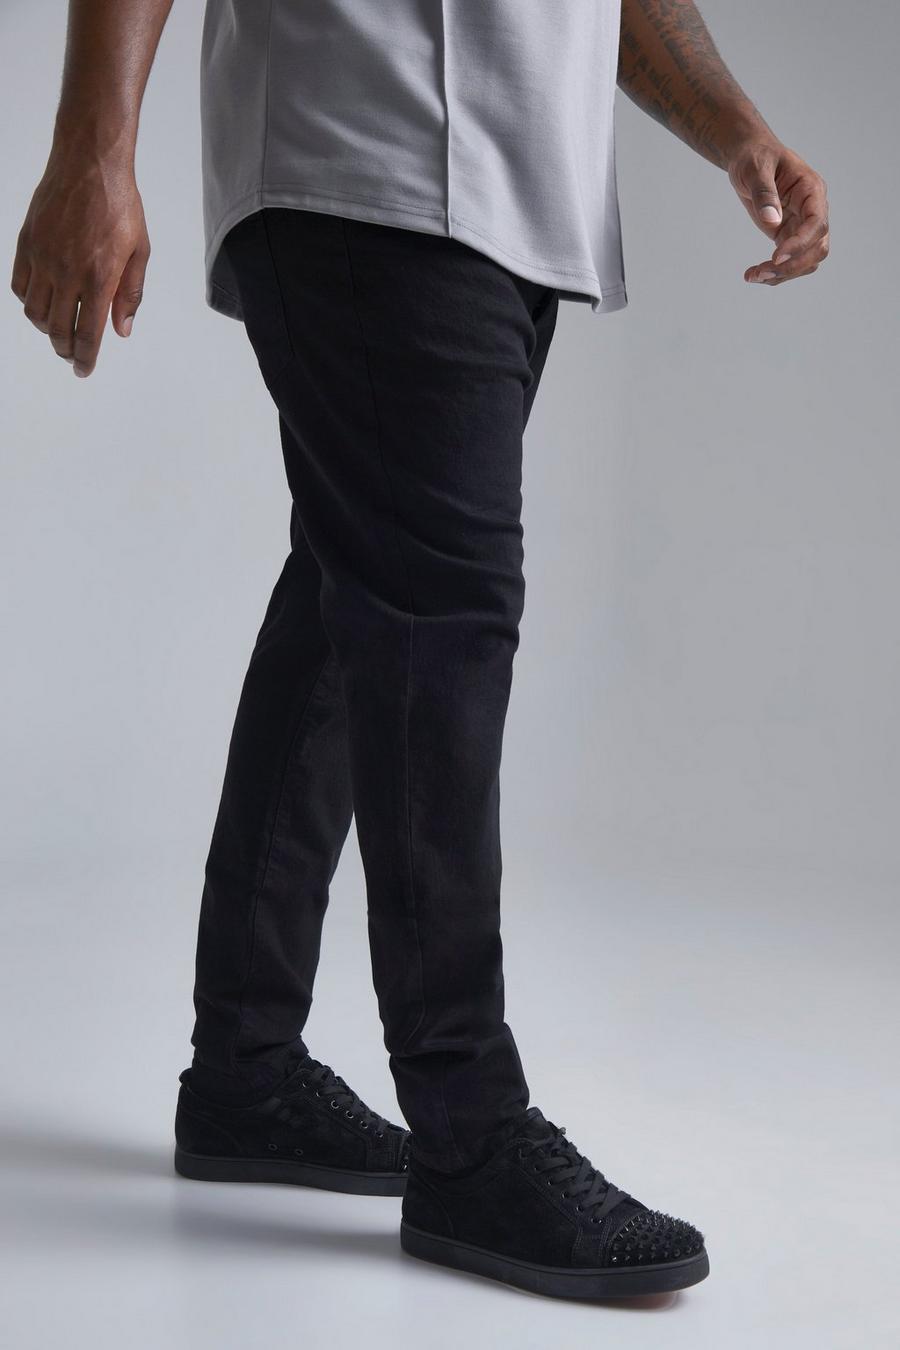 שחור אמיתי סקיני ג'ינס נמתח בשילוב פוליאסטר ממוחזר, מידות גדולות